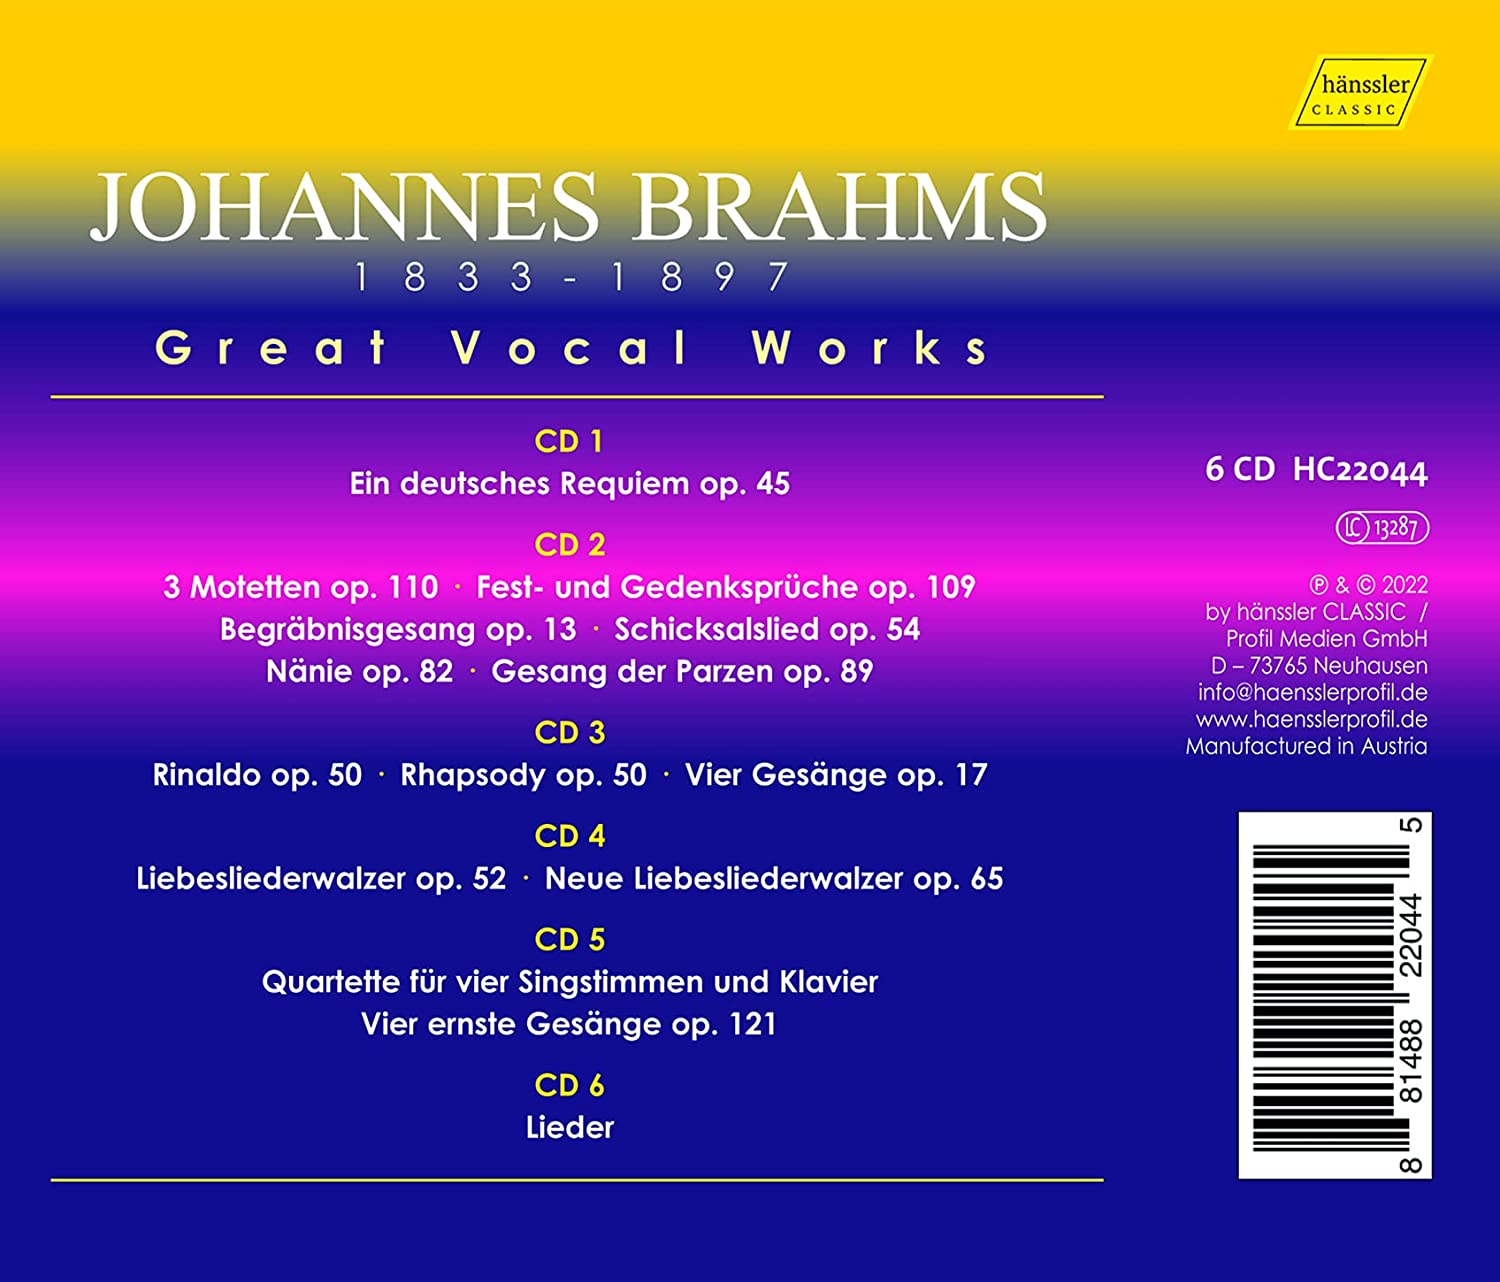 브람스 성악곡 에디션 - '독일 레퀴엠', '네 개의 엄숙한 노래', '사랑의 노래 왈츠', '내니' 외 (Brahms: Great Vocal Works)